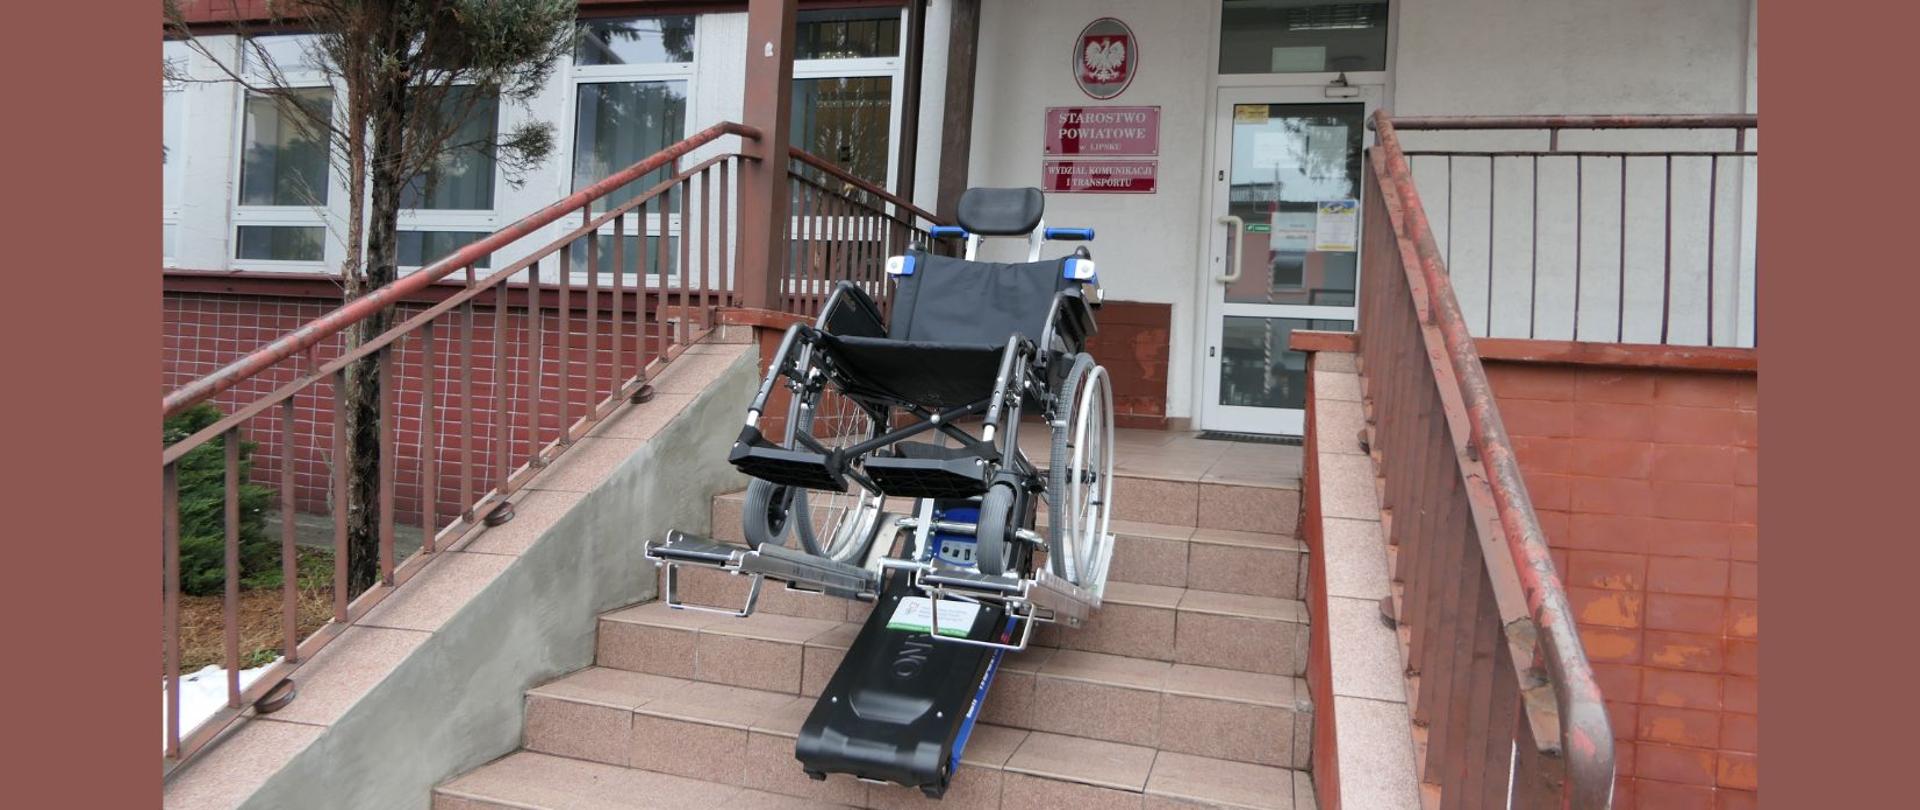 Prezentacja schodołazu wraz z wózkiem inwalidzkim na schodach prowadzących do Wydziału Komunikacji i Transportu Starostwa Powiatowego w Lipsku.